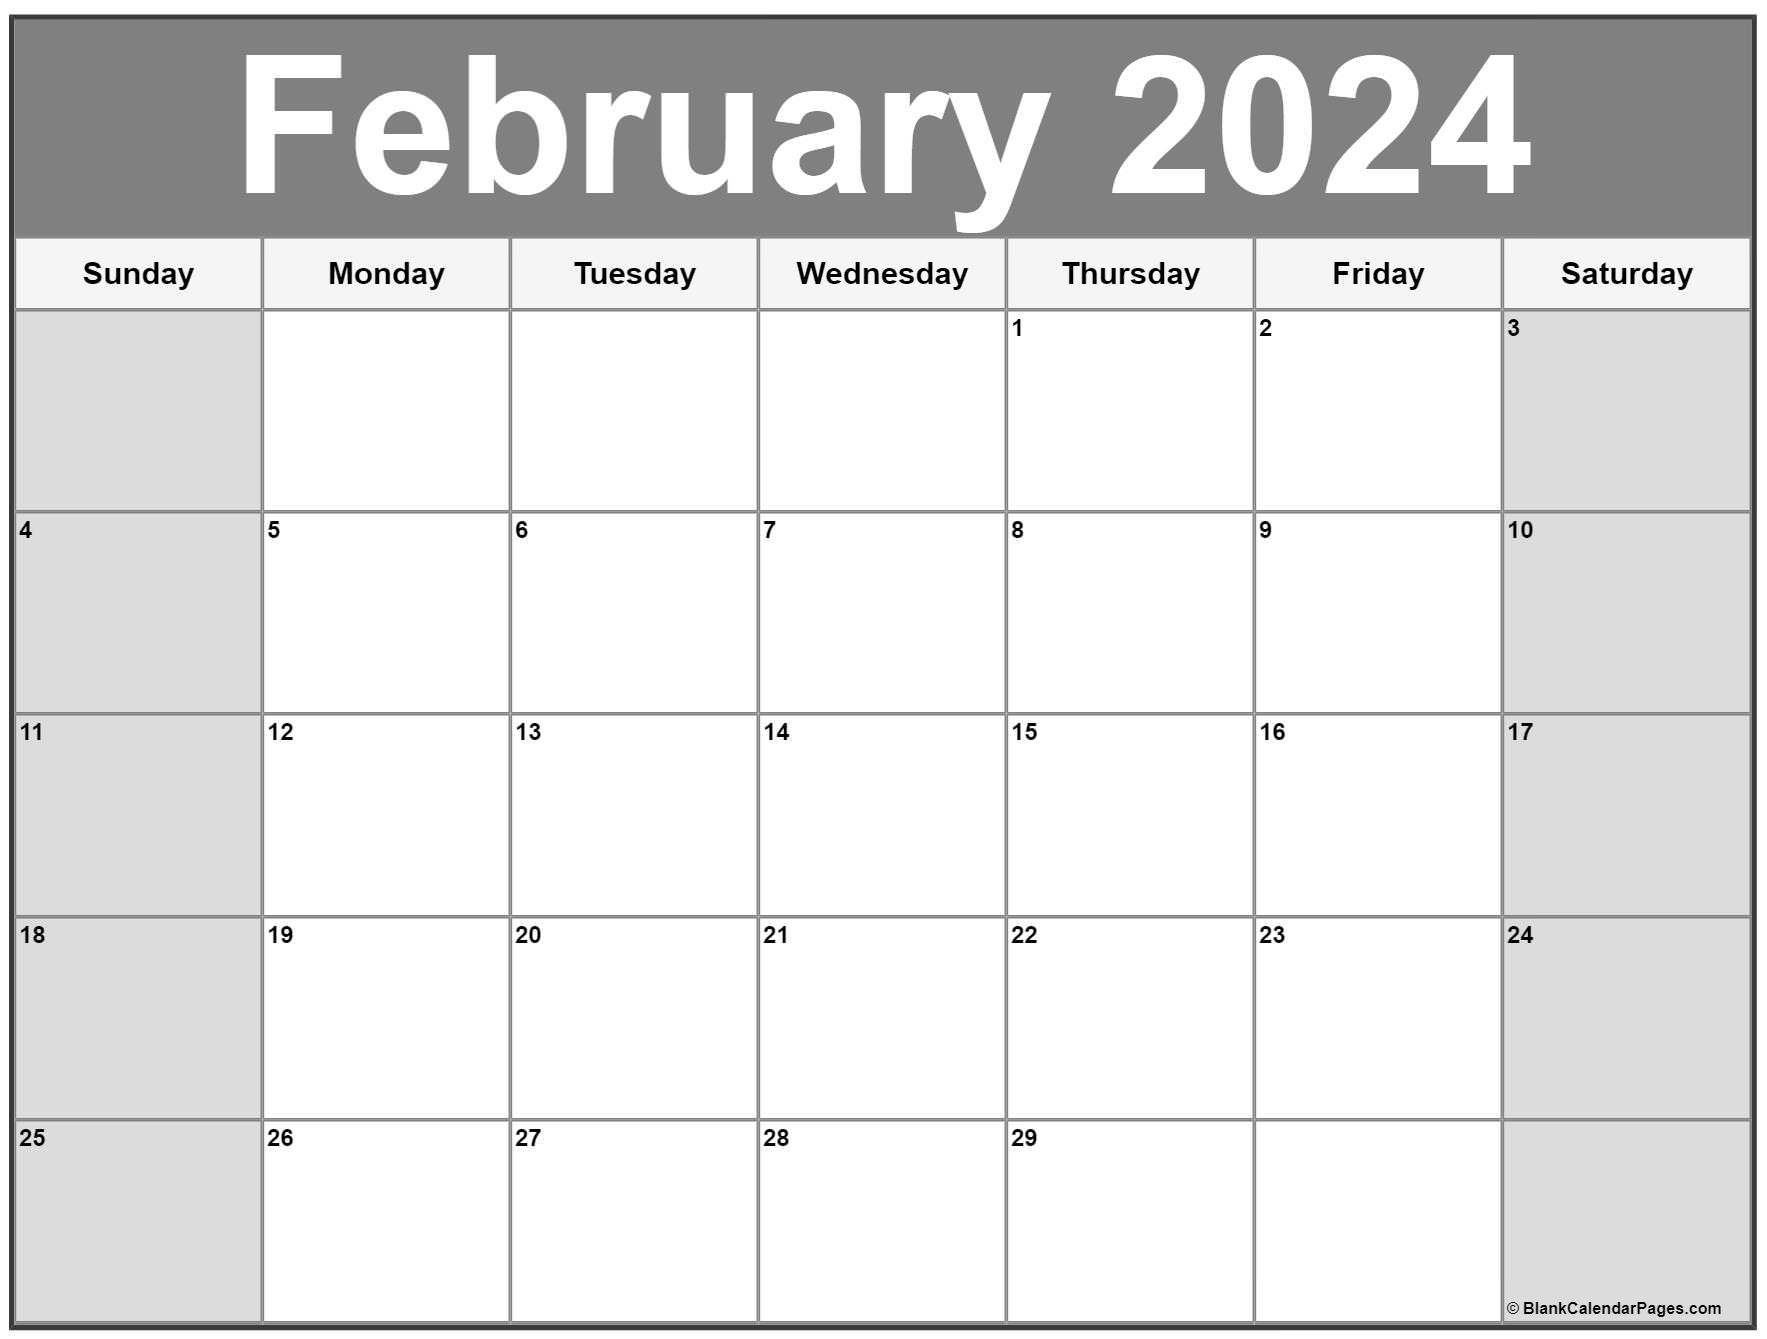 february-2023-calendar-free-printable-calendar